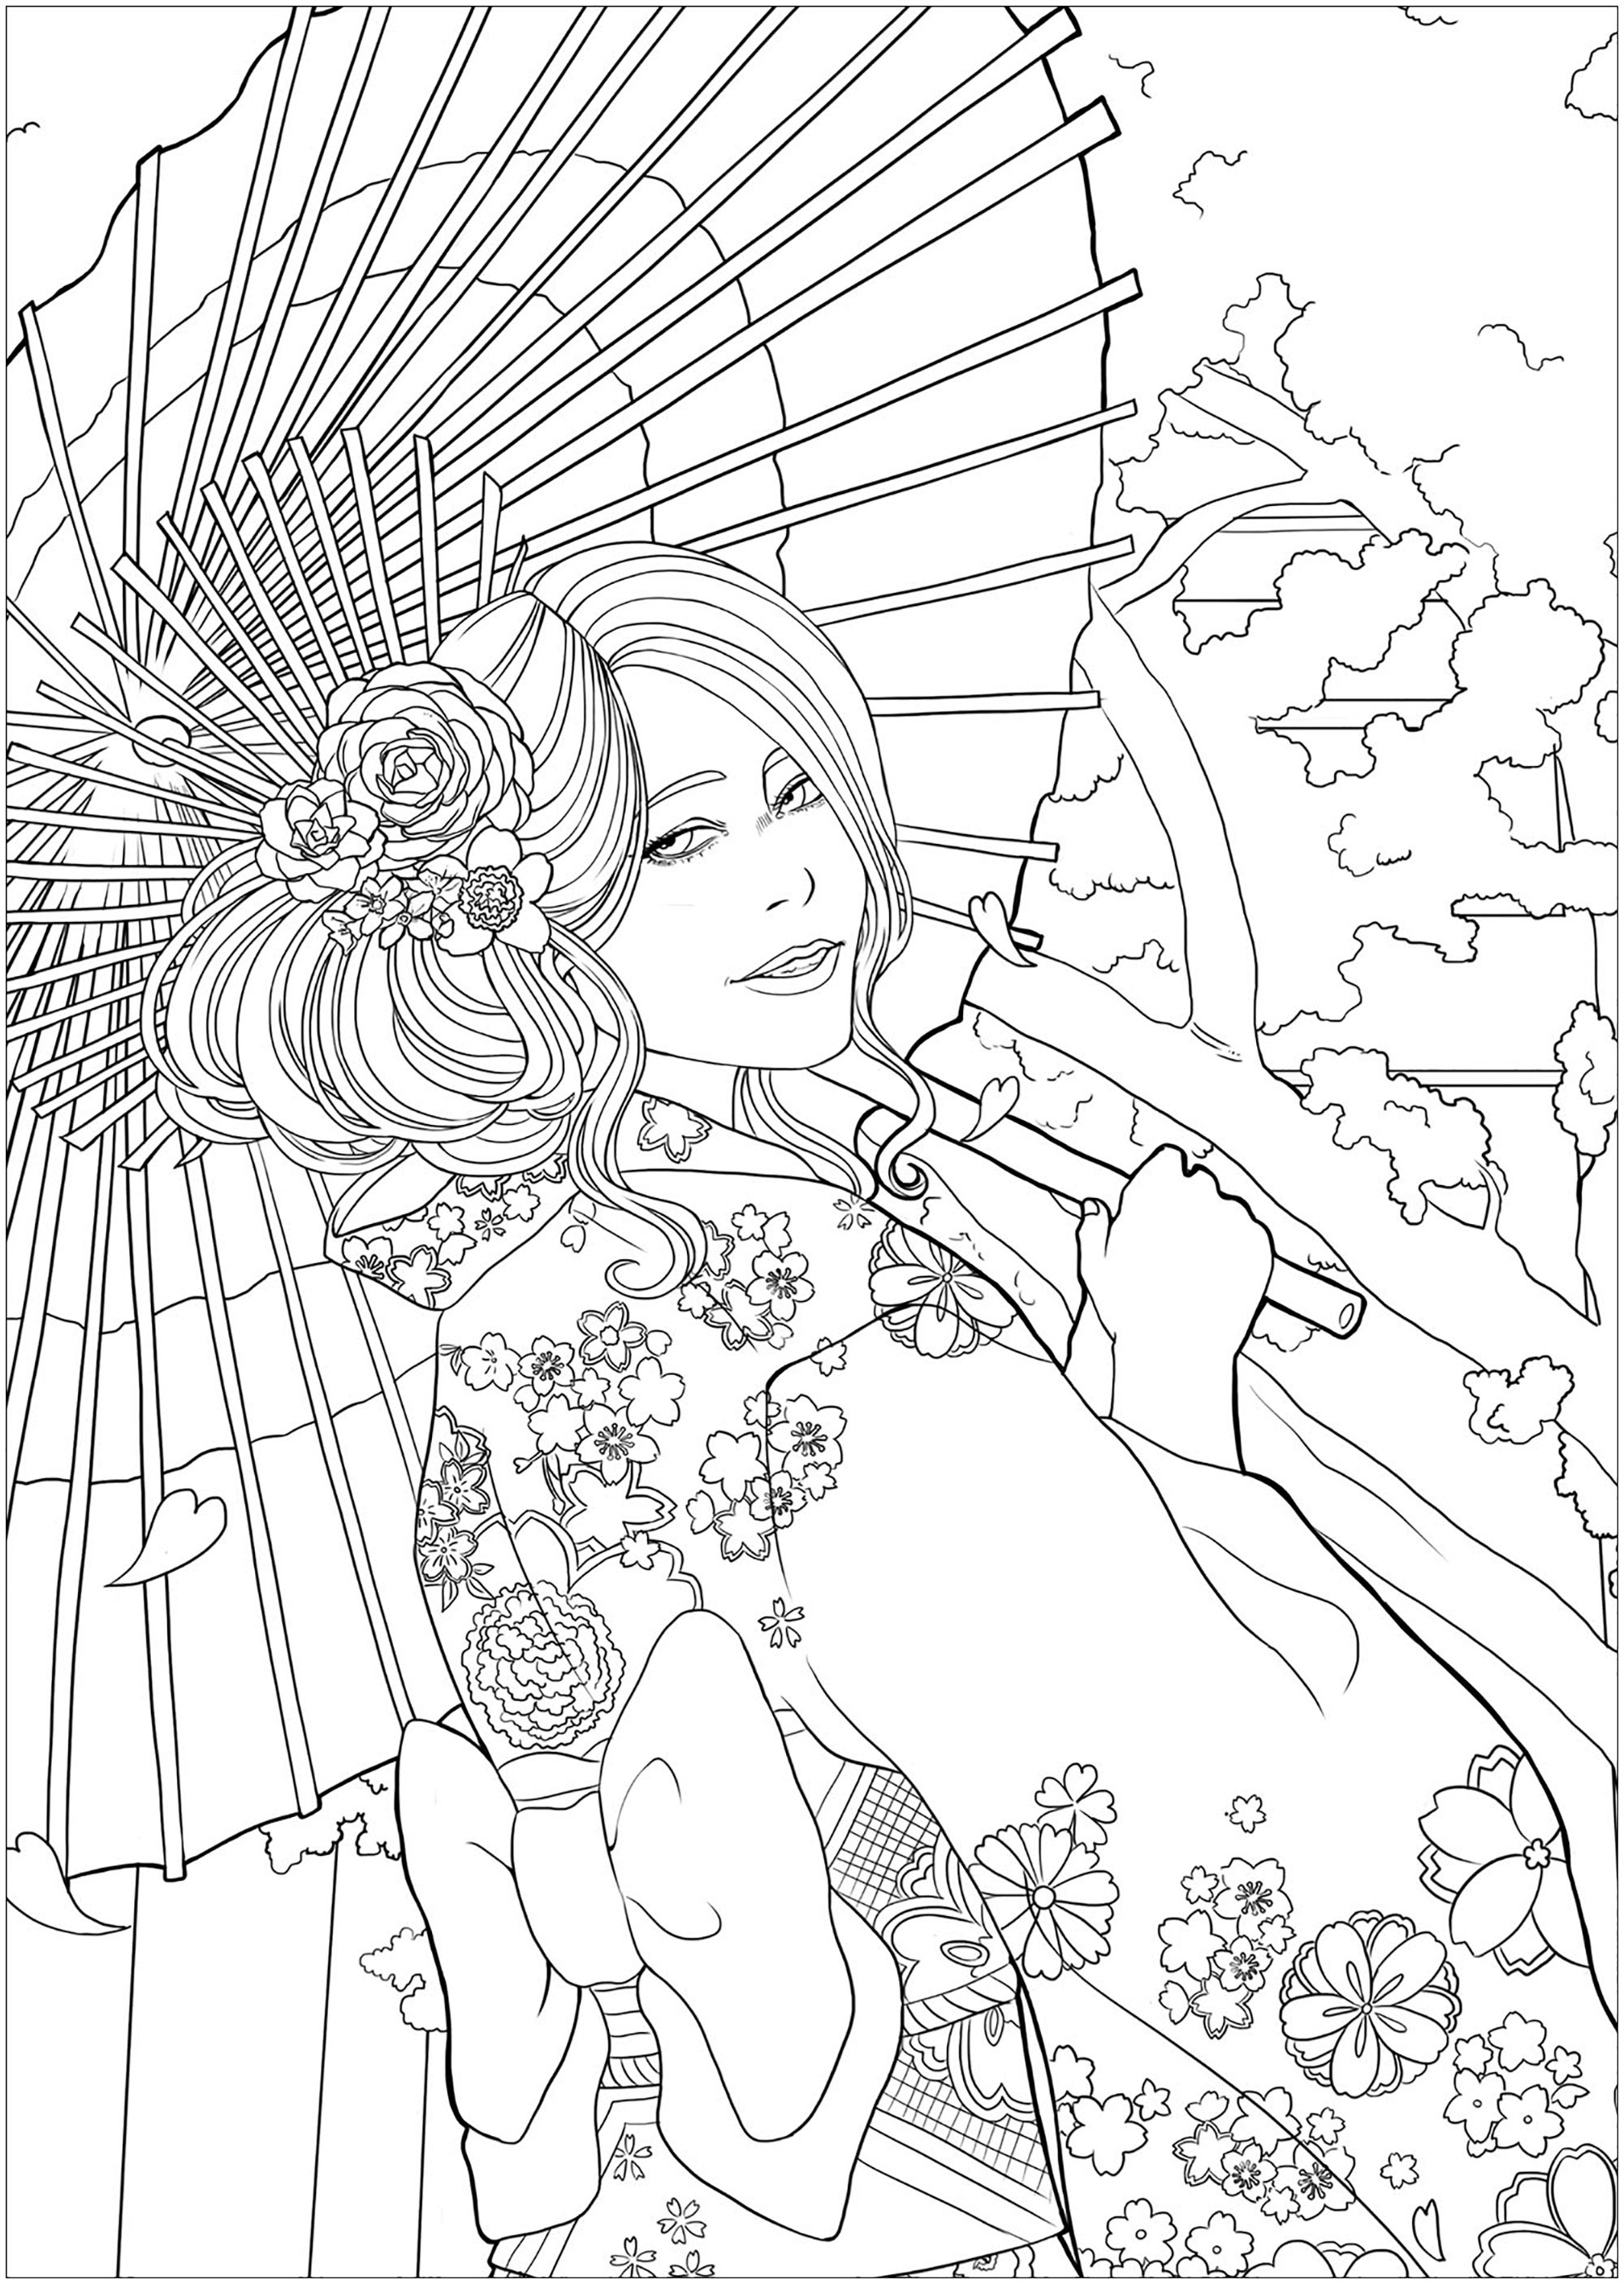 Elegante joven delante de un templo y cerezos en flor, con su yukata más bonito. Versión fácil 2